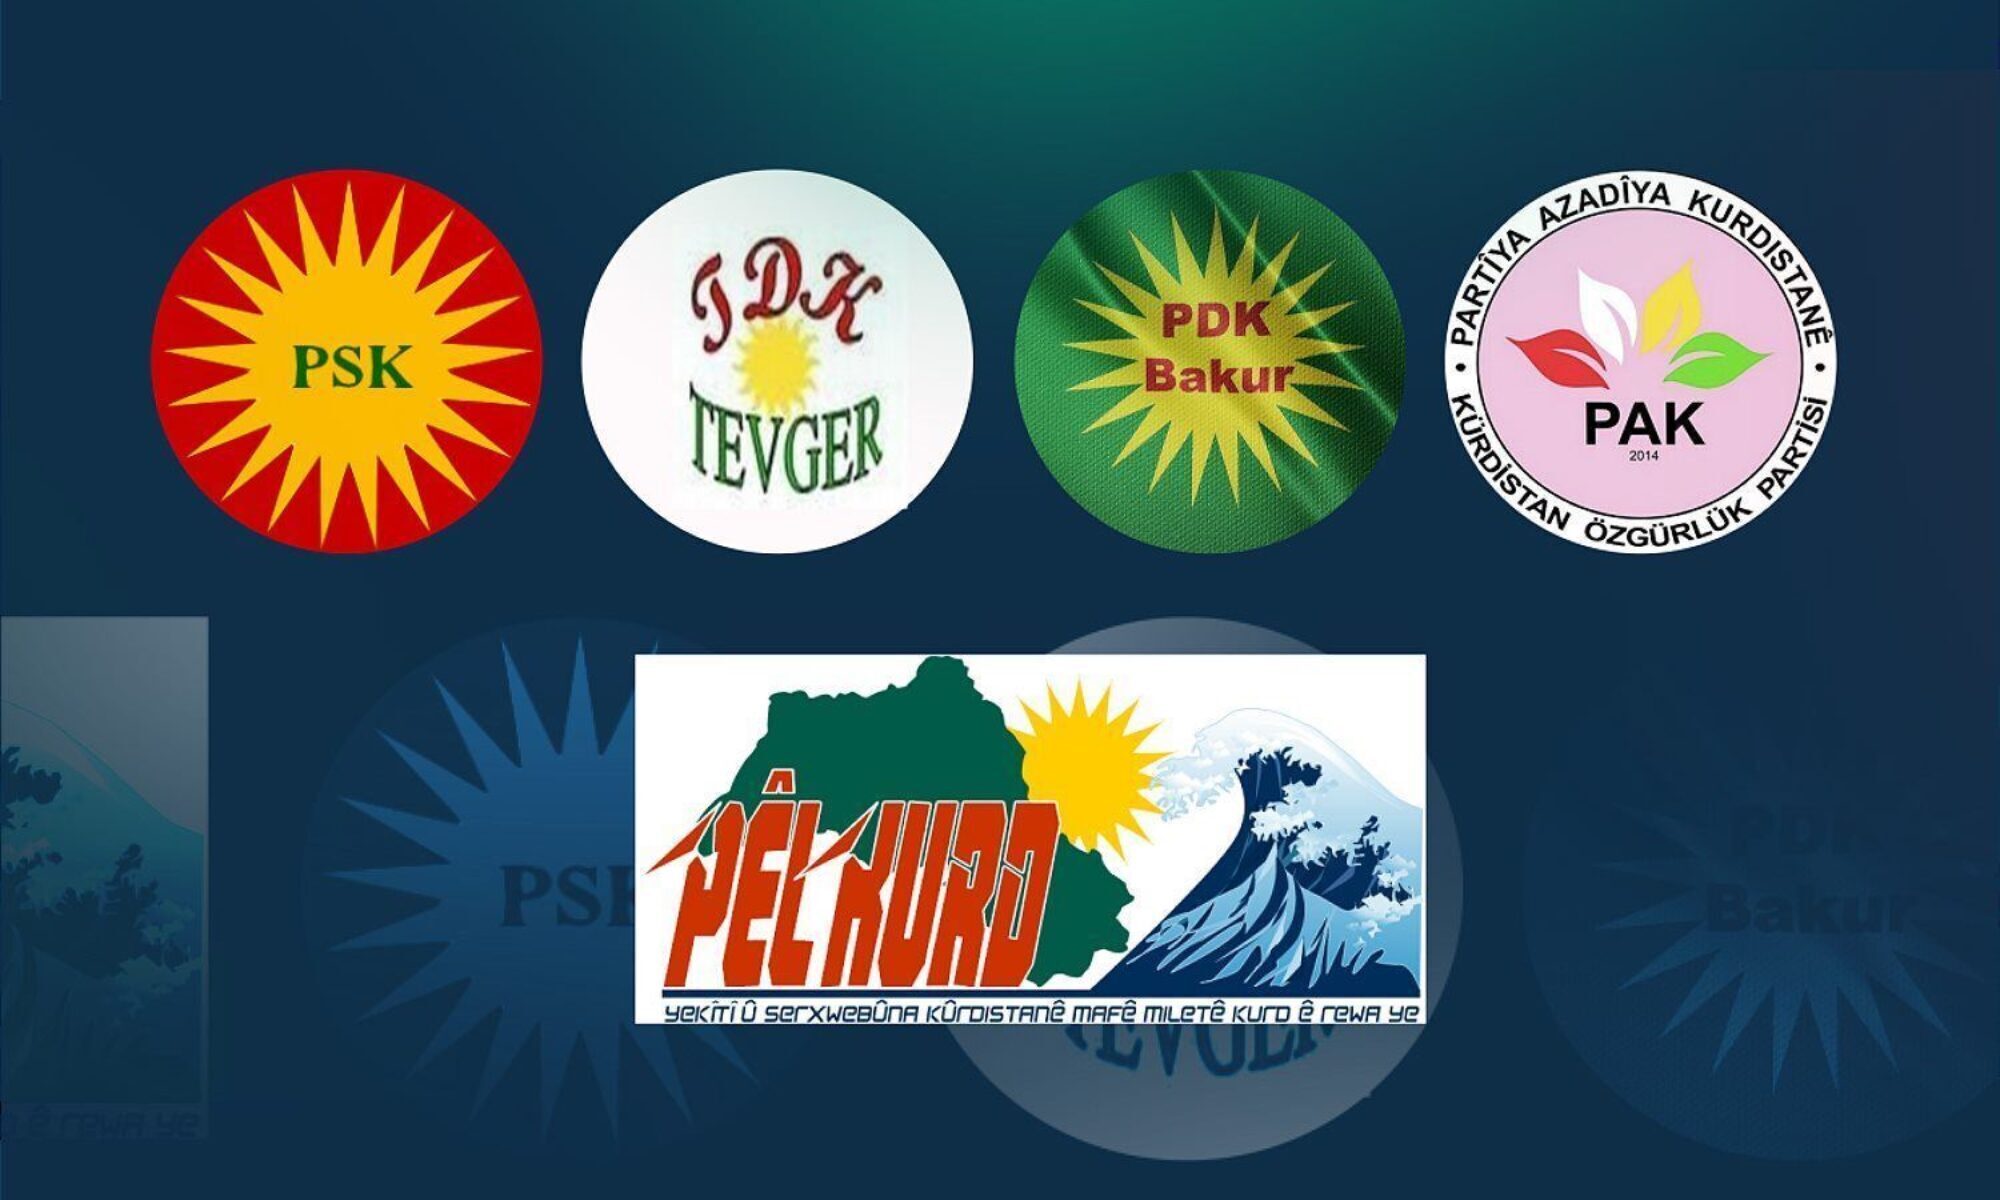 Diyarbakır'da 5 partiden açıklama: 25 Eylül Bağımsızlık Referandumu ile ortaya konulan iradenin sahiplenilmesi ulusal bir görevdir.”